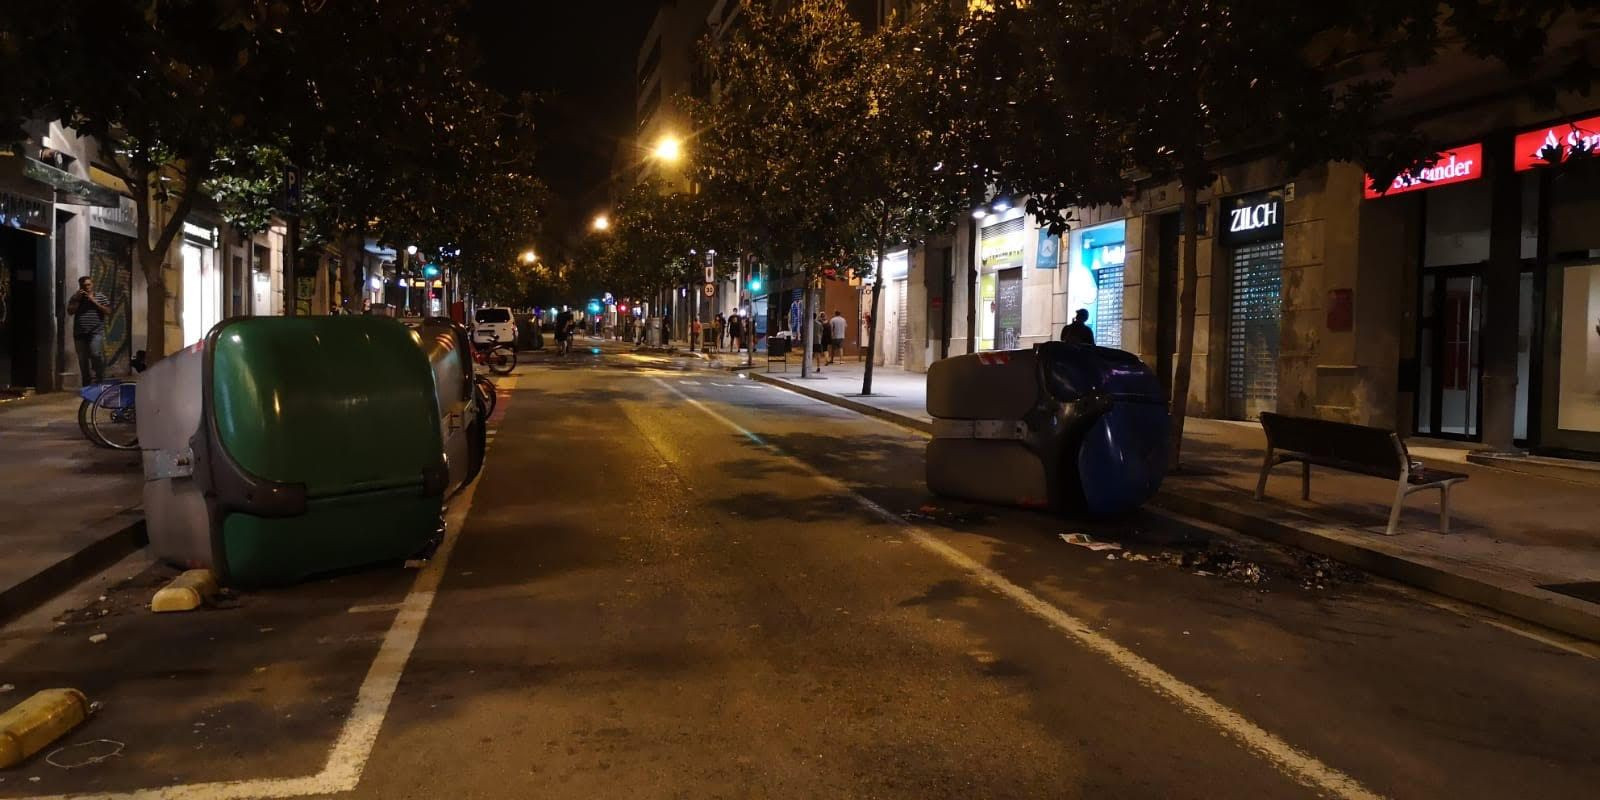 Contenedores volcados por los CDR en la calle Gran de Gràcia / G.A.